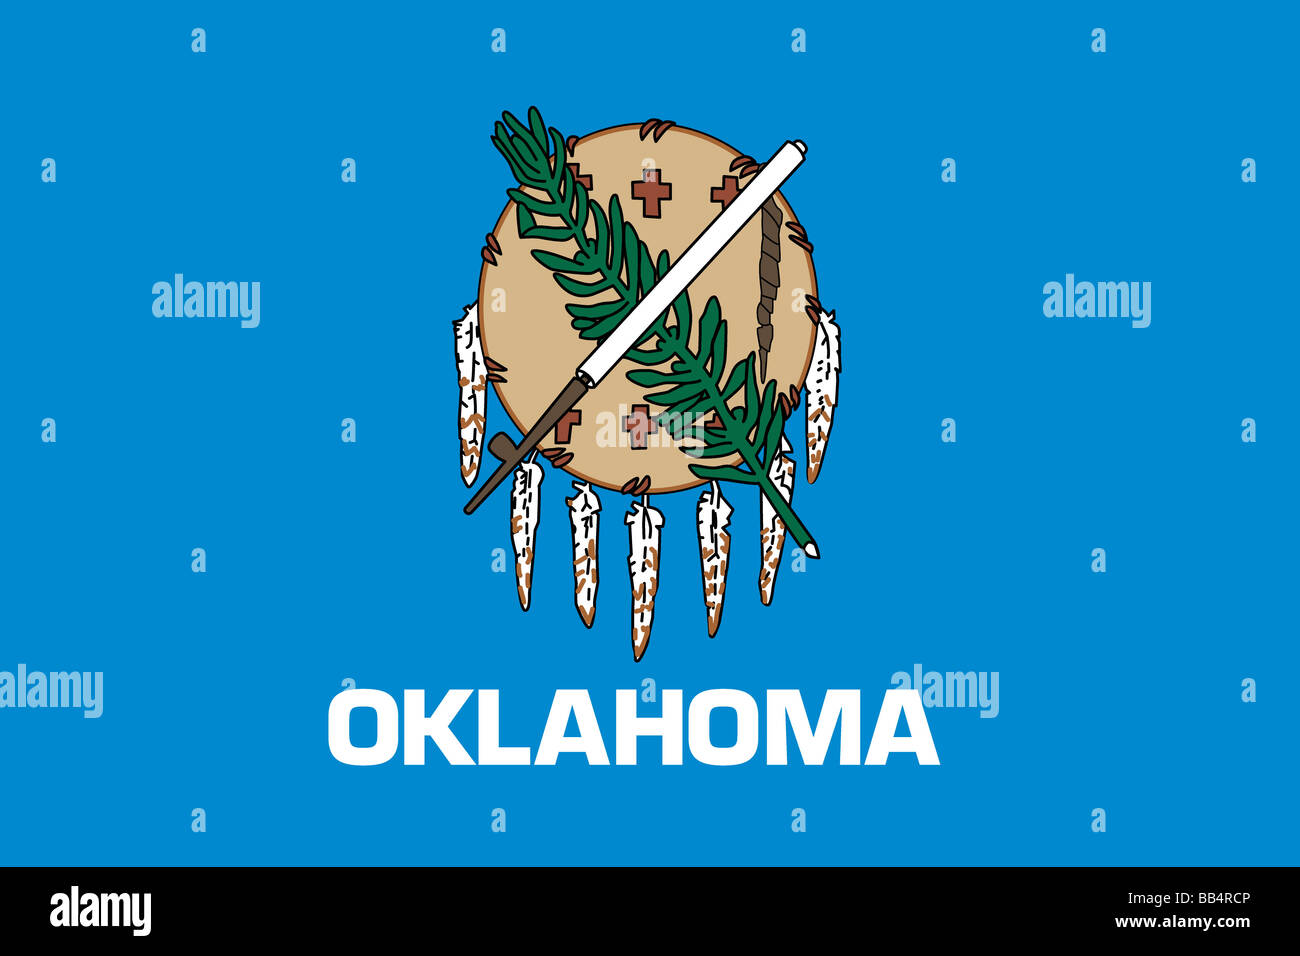 Oklahoma state flag Stock Photo